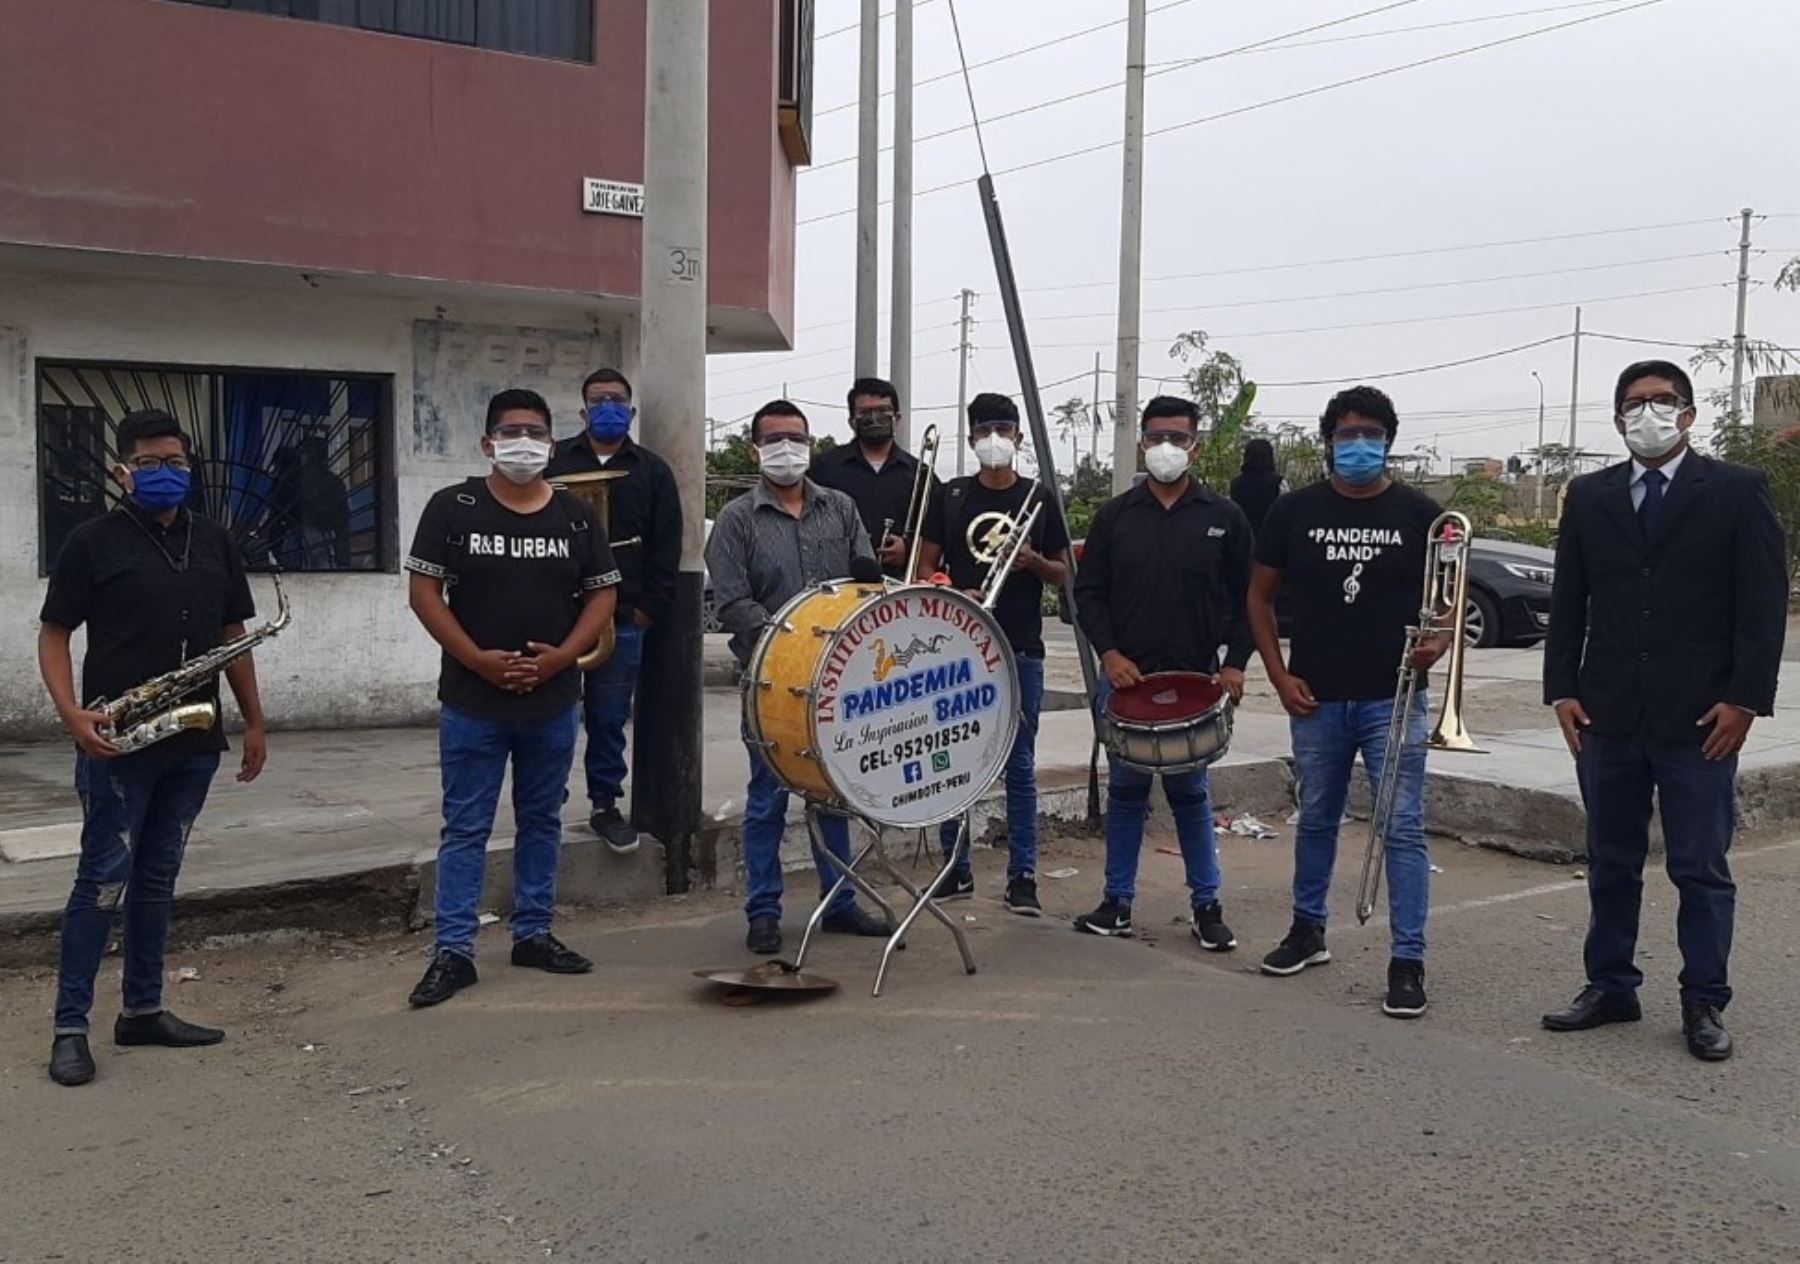 Conoce a la “Pandemia Band”, el grupo musical integrado por siete jóvenes que alegra las calles de Chimbote con cumbias, huainos y marineras. ANDINA/Difusión